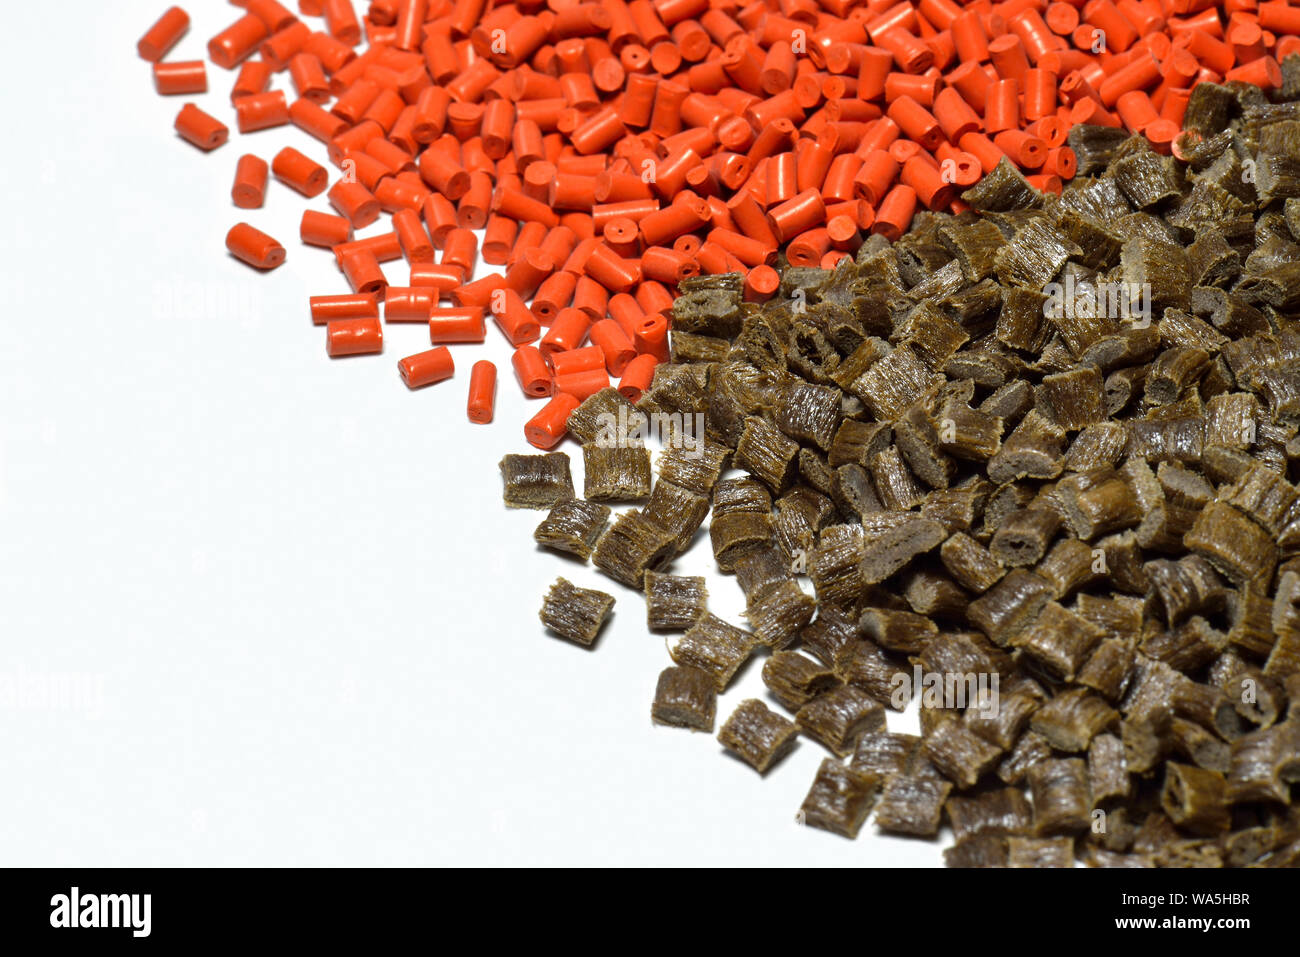 Gránulos de polímero de color naranja y marrón para el proceso de moldeo por inyección Foto de stock